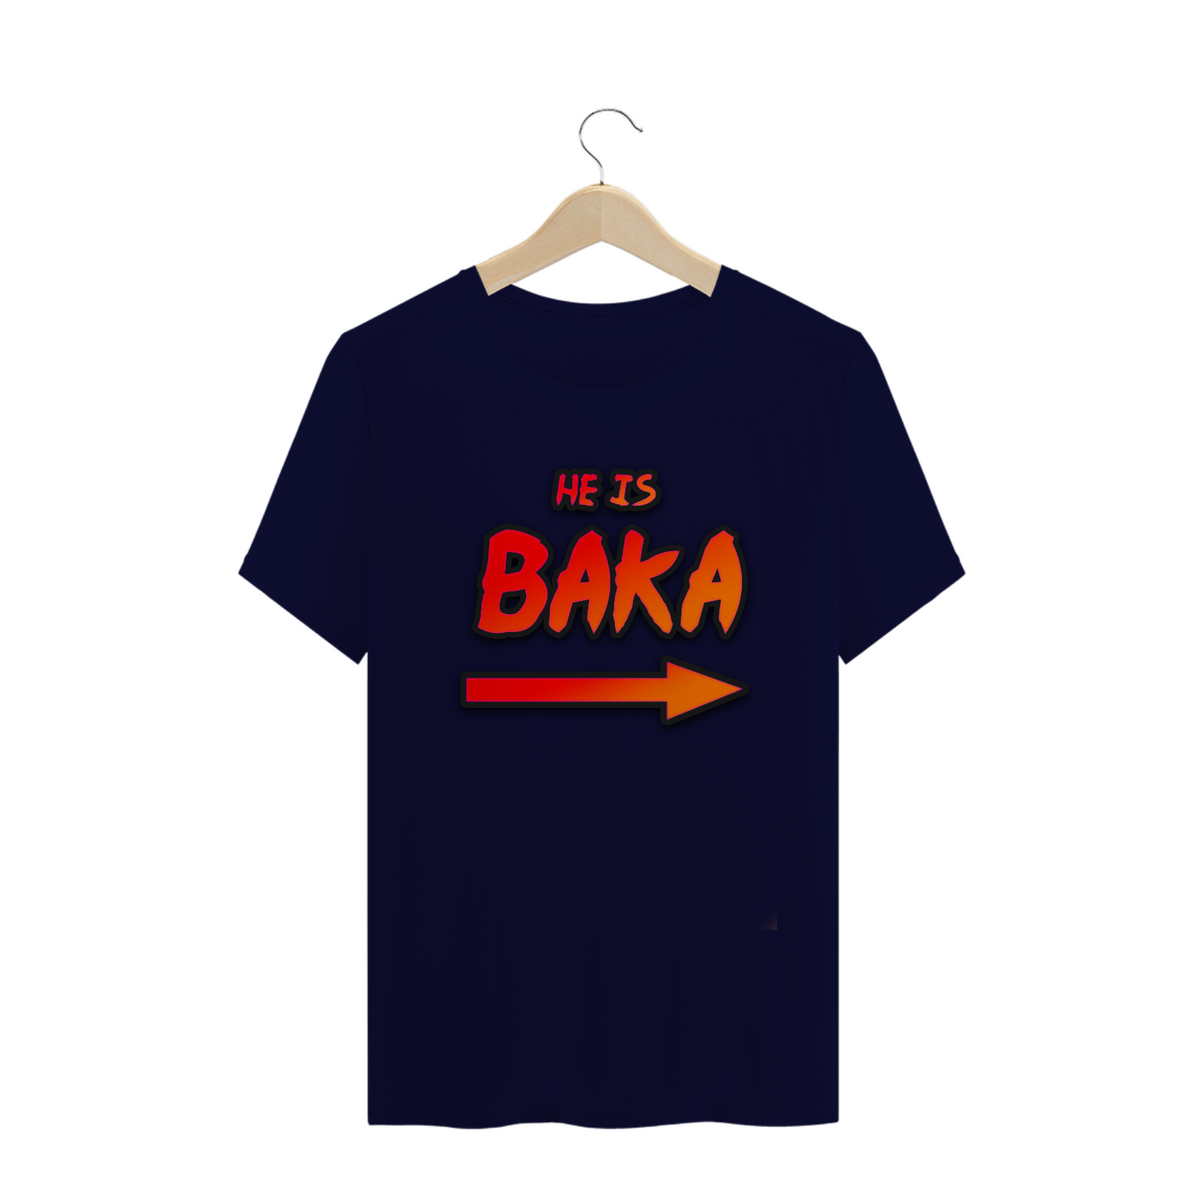 Nome do produto: Baka